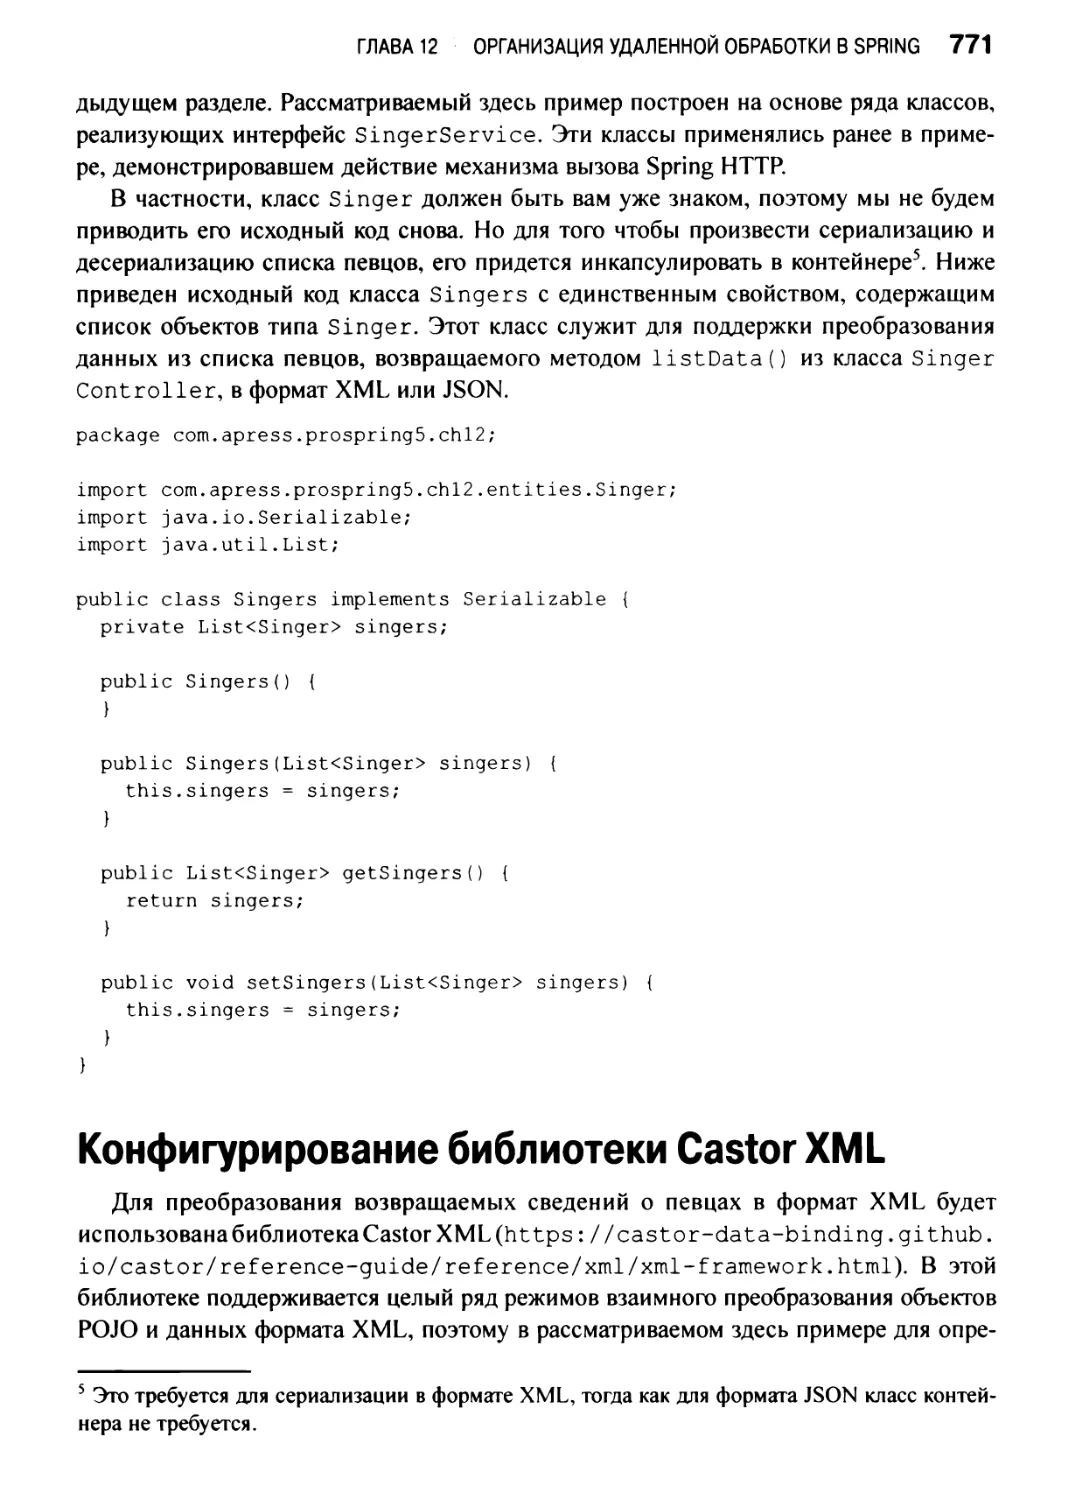 Конфигурирование библиотеки Castor XML